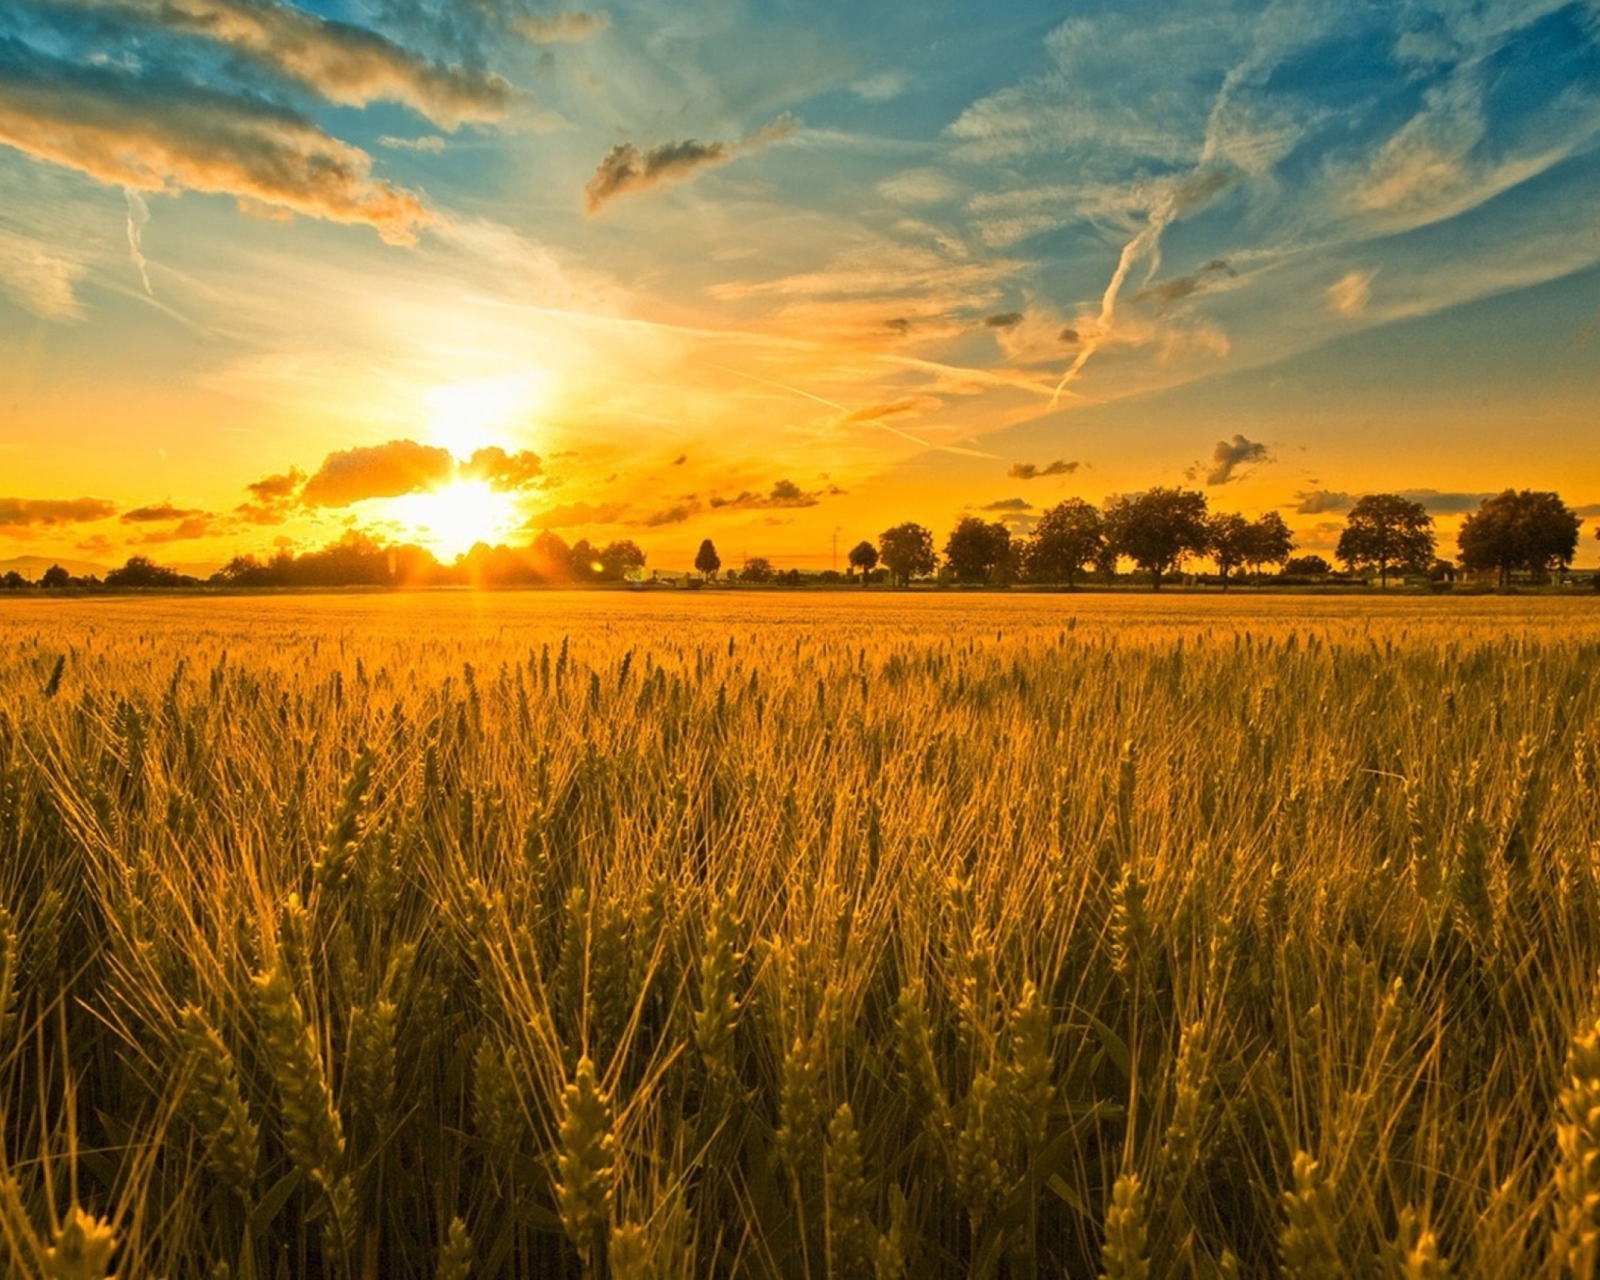 Обои Sunset And Wheat Field 1600x1280